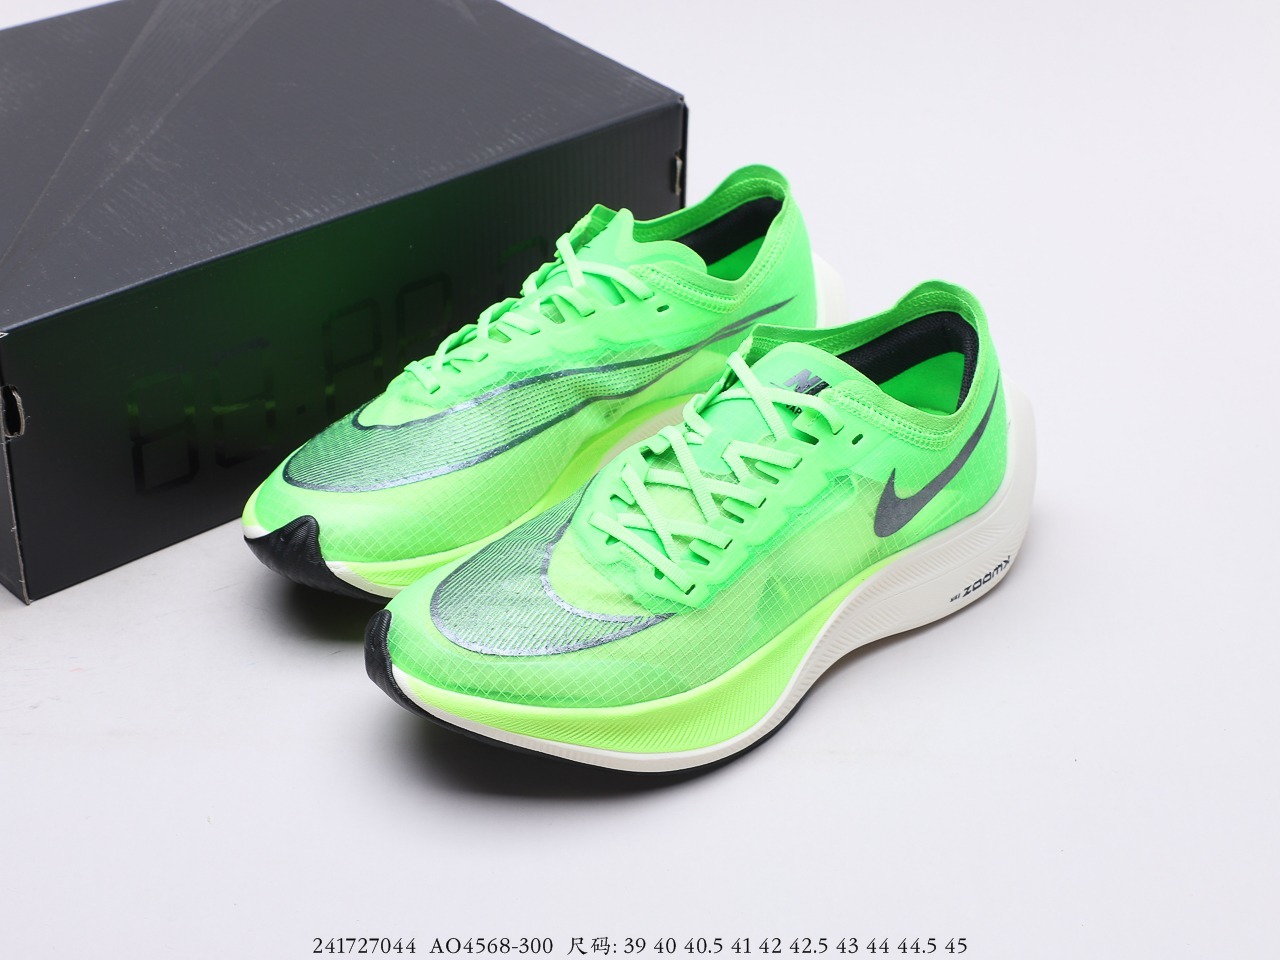 [MShose] รองเท้าวิ่งNike Zoom X Vaporfly Next% สีดำ-เขียว รองเท้าวิ่ง รองเท้ากีฬา รองเท้าออกกำลังกาย รีวิวสินค้าถ่ายจากงานจริง100%